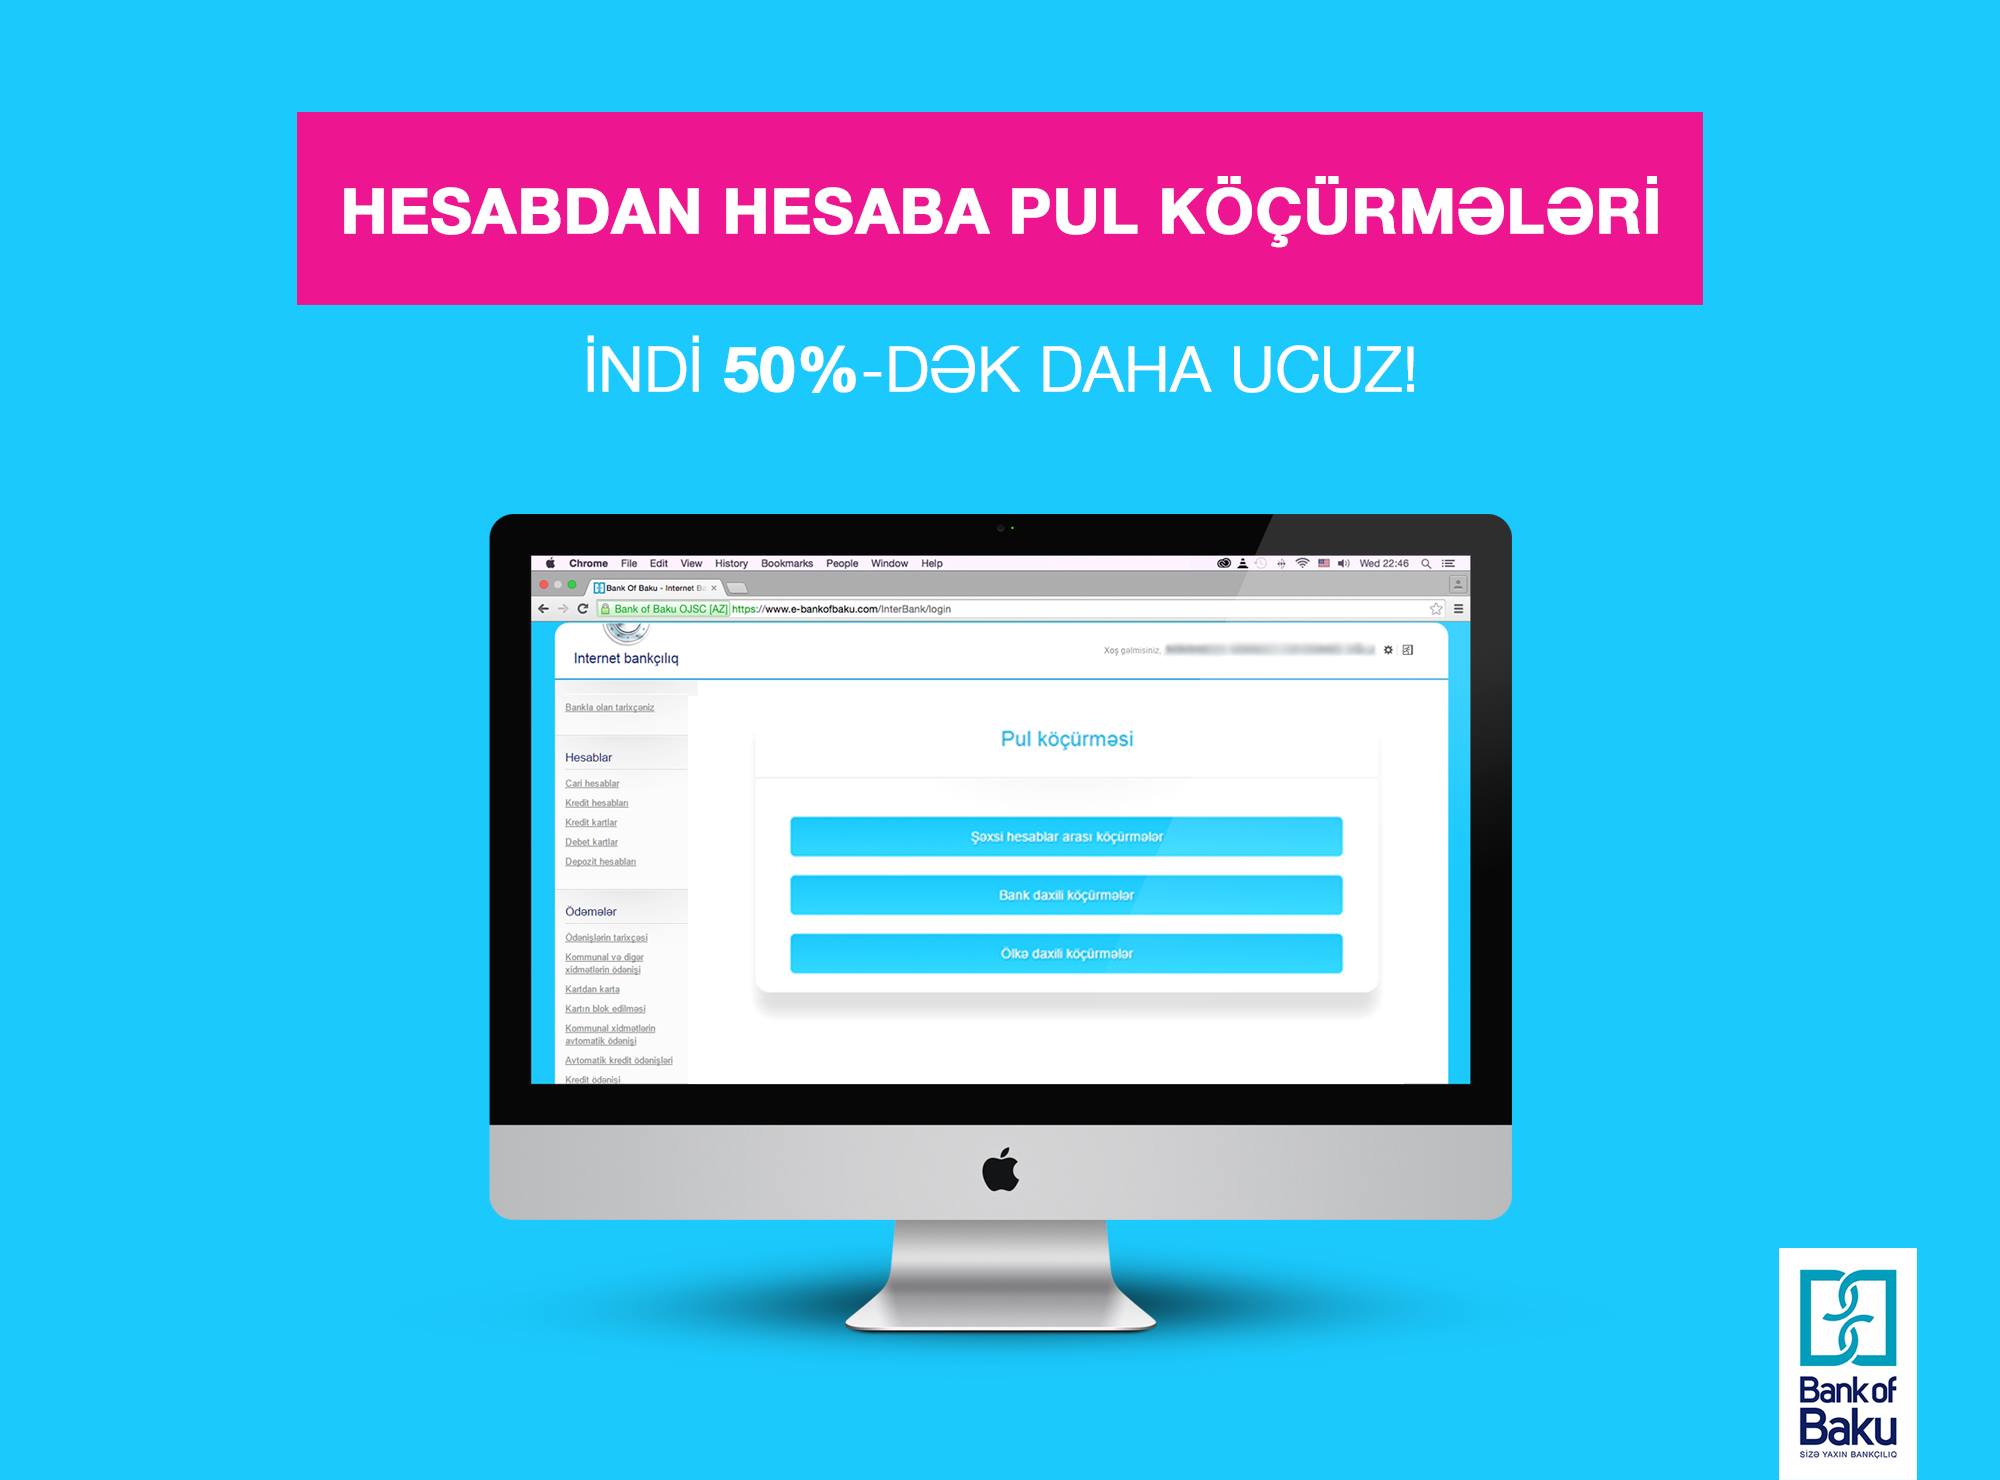 Денежные переводы со счета на счет стали на 50% дешевле с услугой Интернет-Банкинга от Bank of Baku!